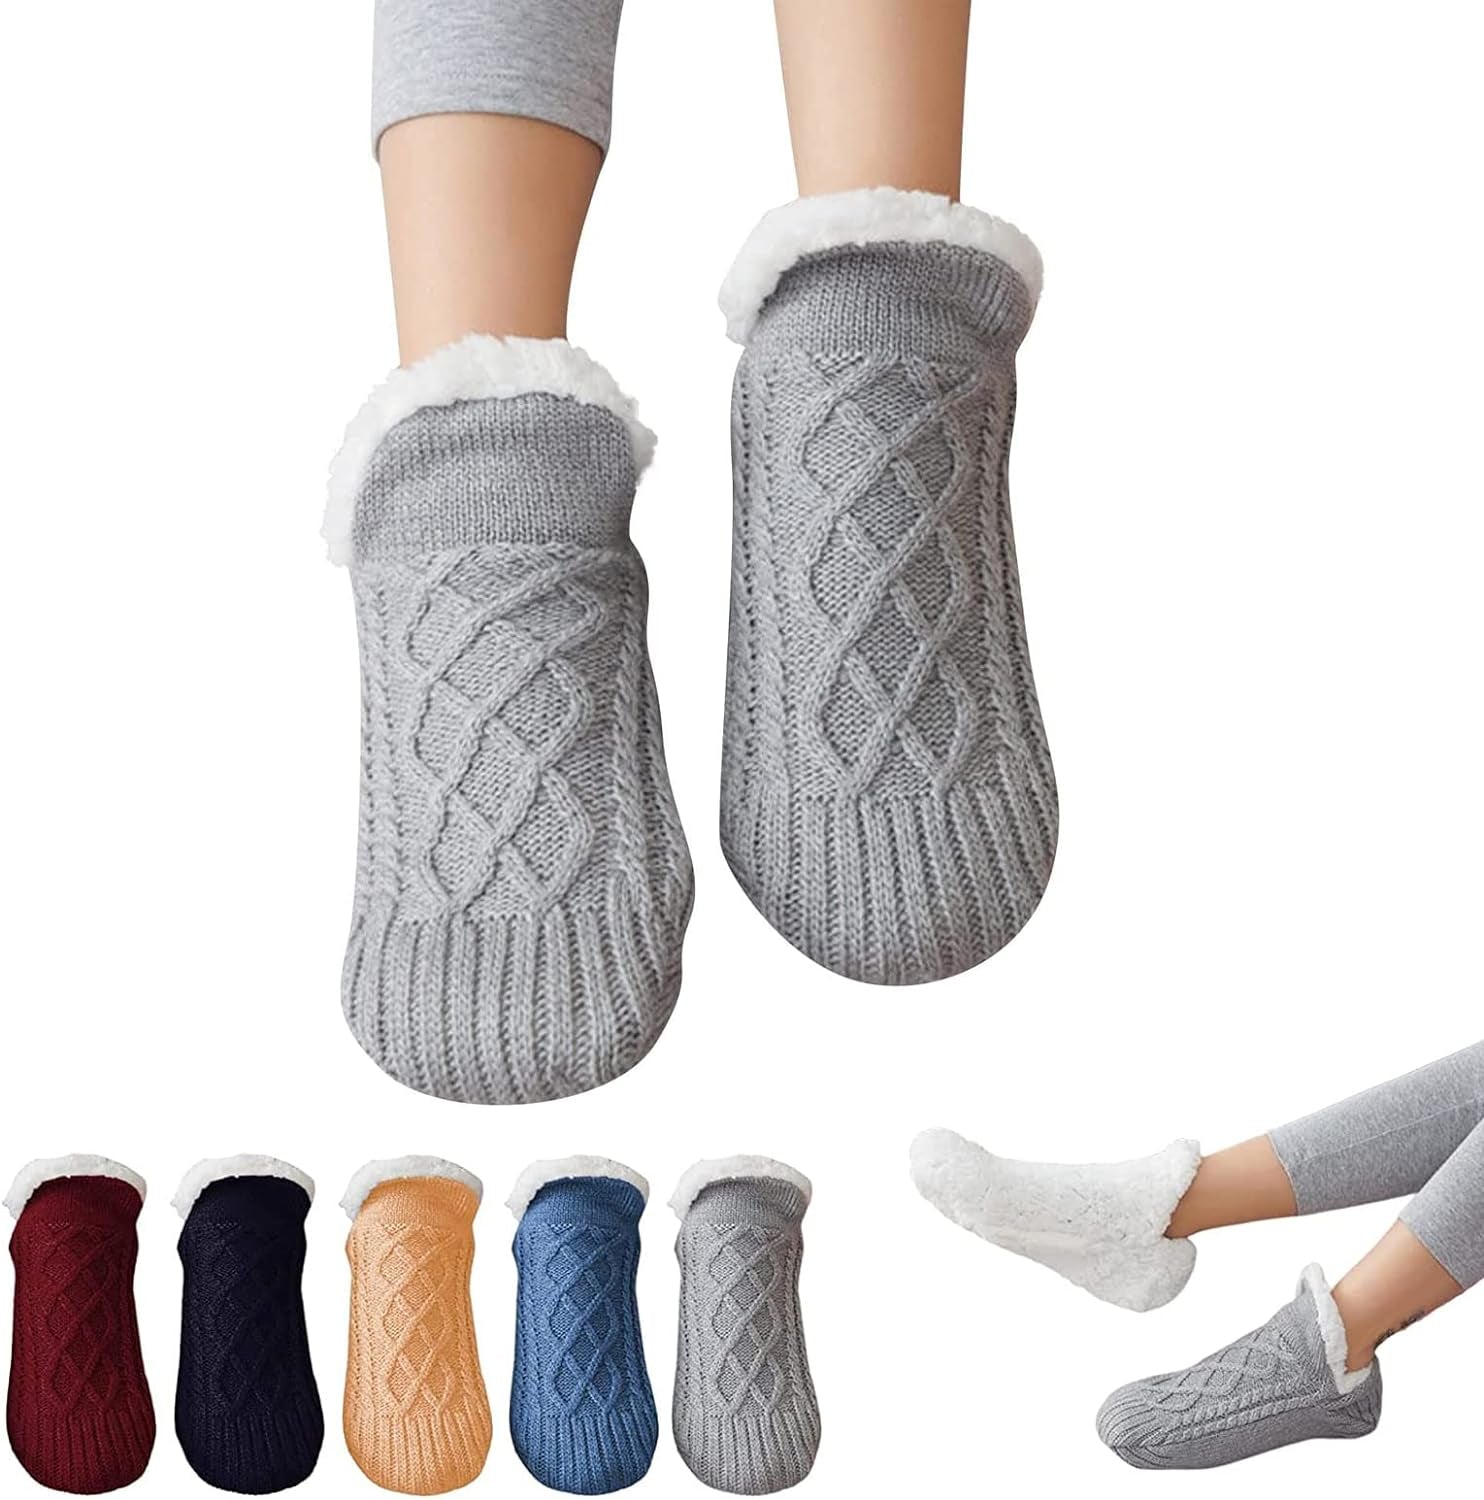 Slipper Socks for Women, Womens Slipper Socks Indoor Floor Non-Slip Thermal Socks, Woven and Velvet Soft Cozy Thick Indoor Socks Slippers (M, Grey)